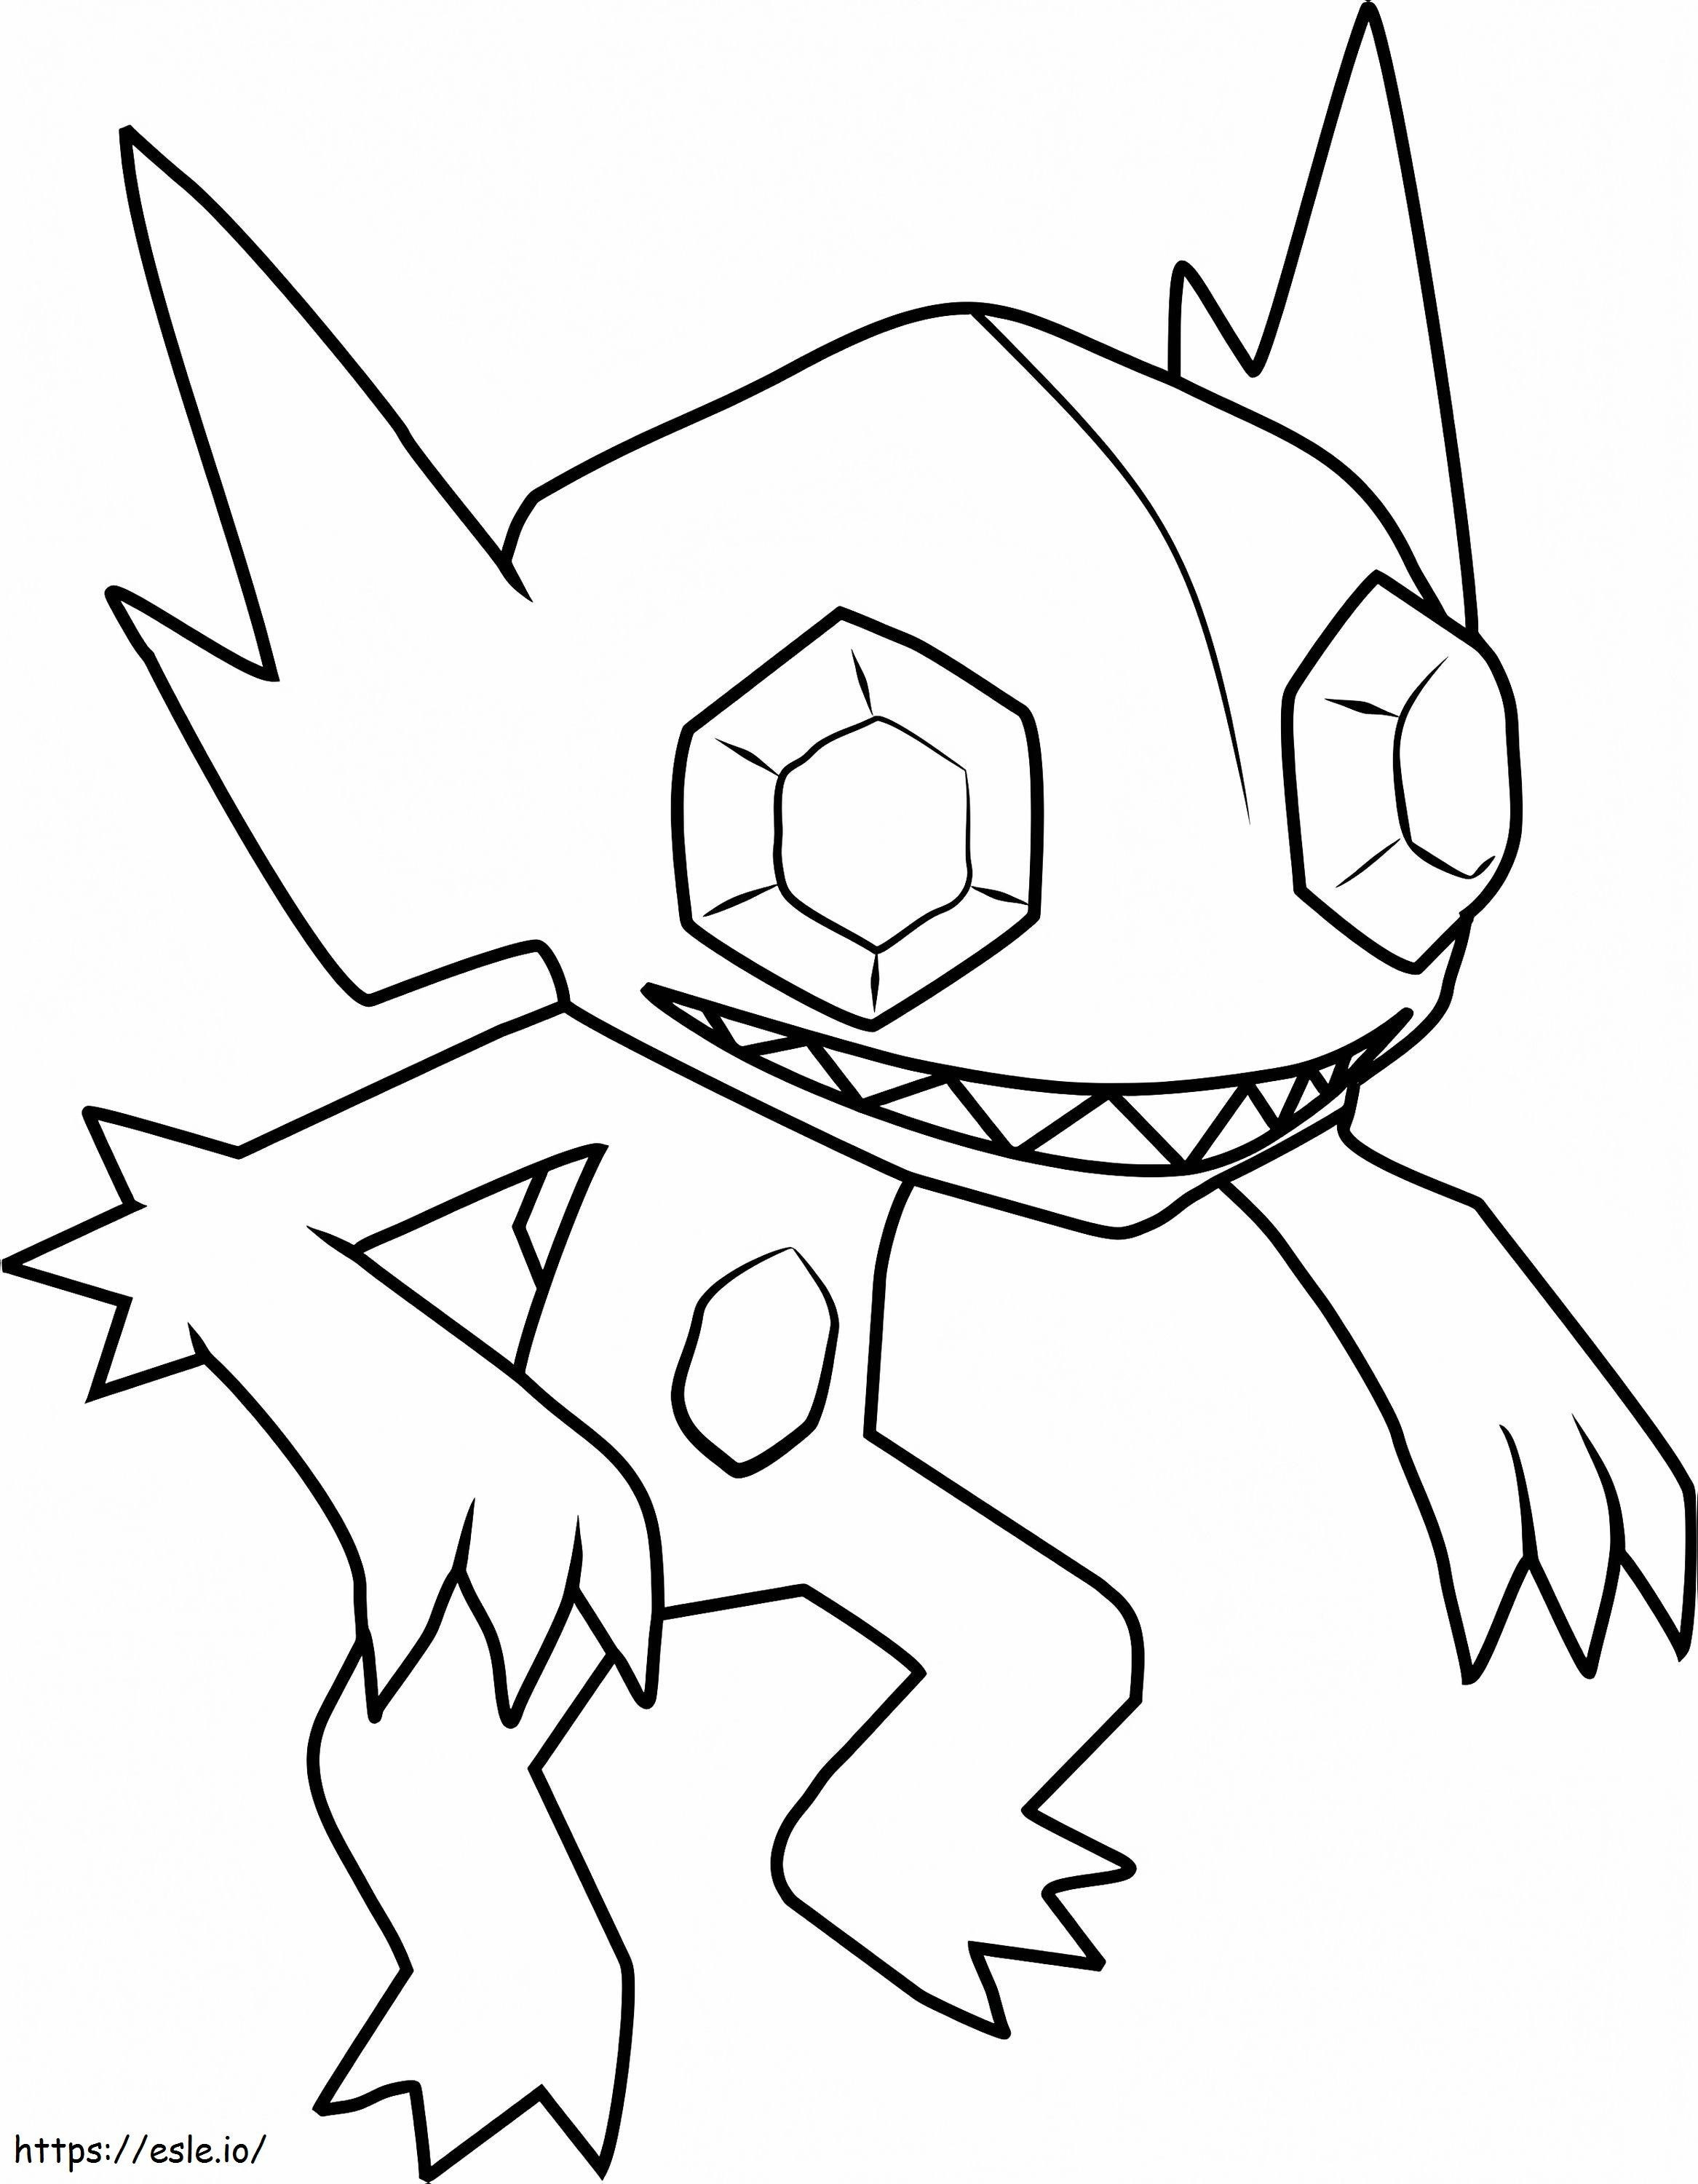 Coloriage  Sableye Pokémon A4 à imprimer dessin